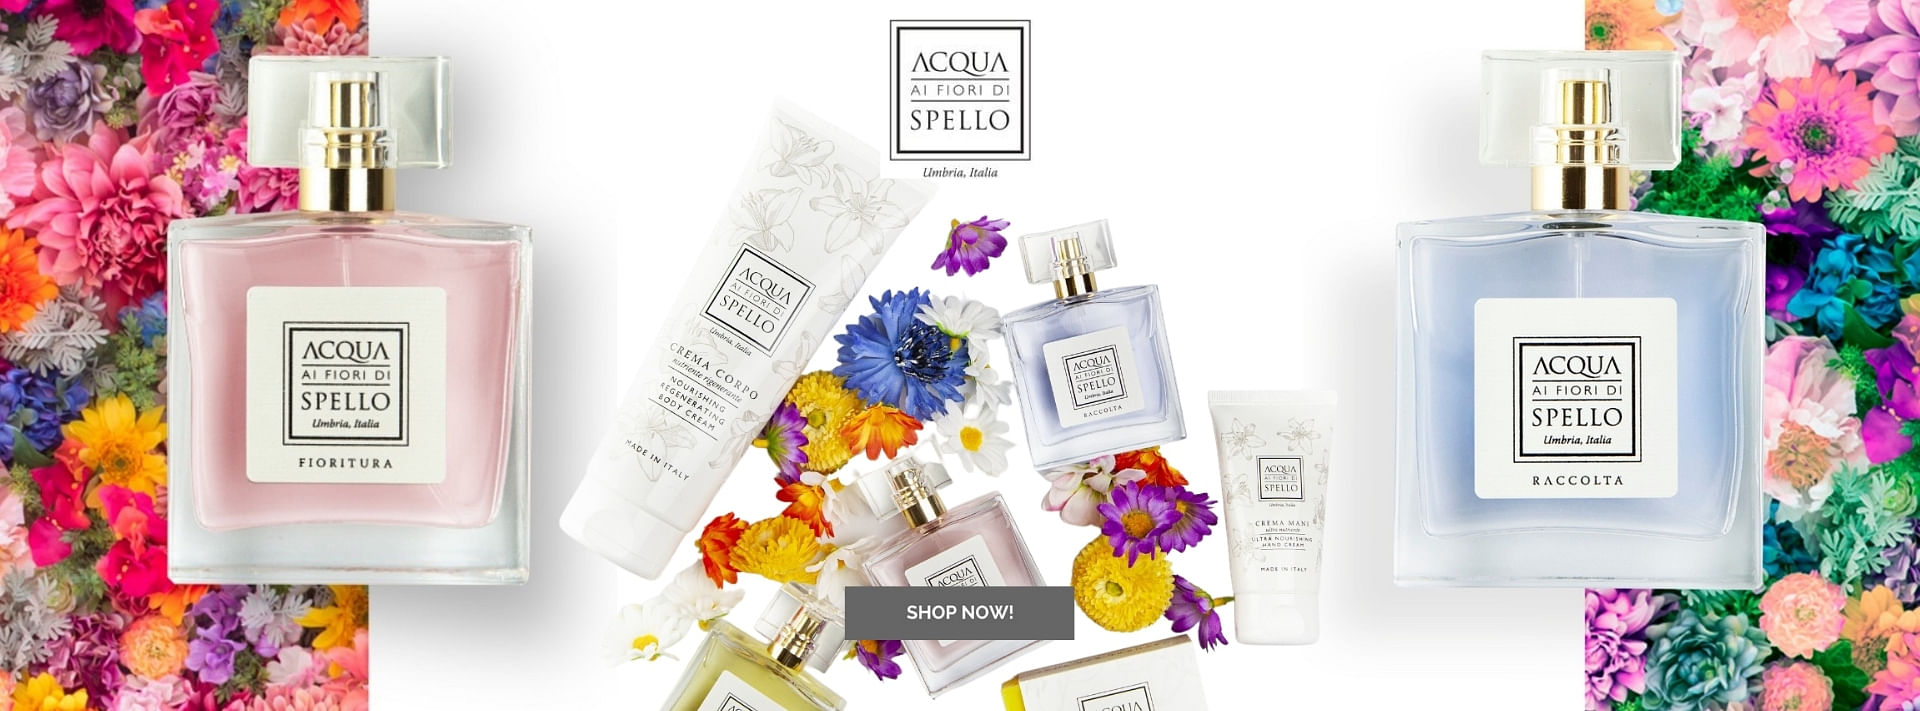 Discover the wonderful fragrances by Acqua ai fiori di Spello